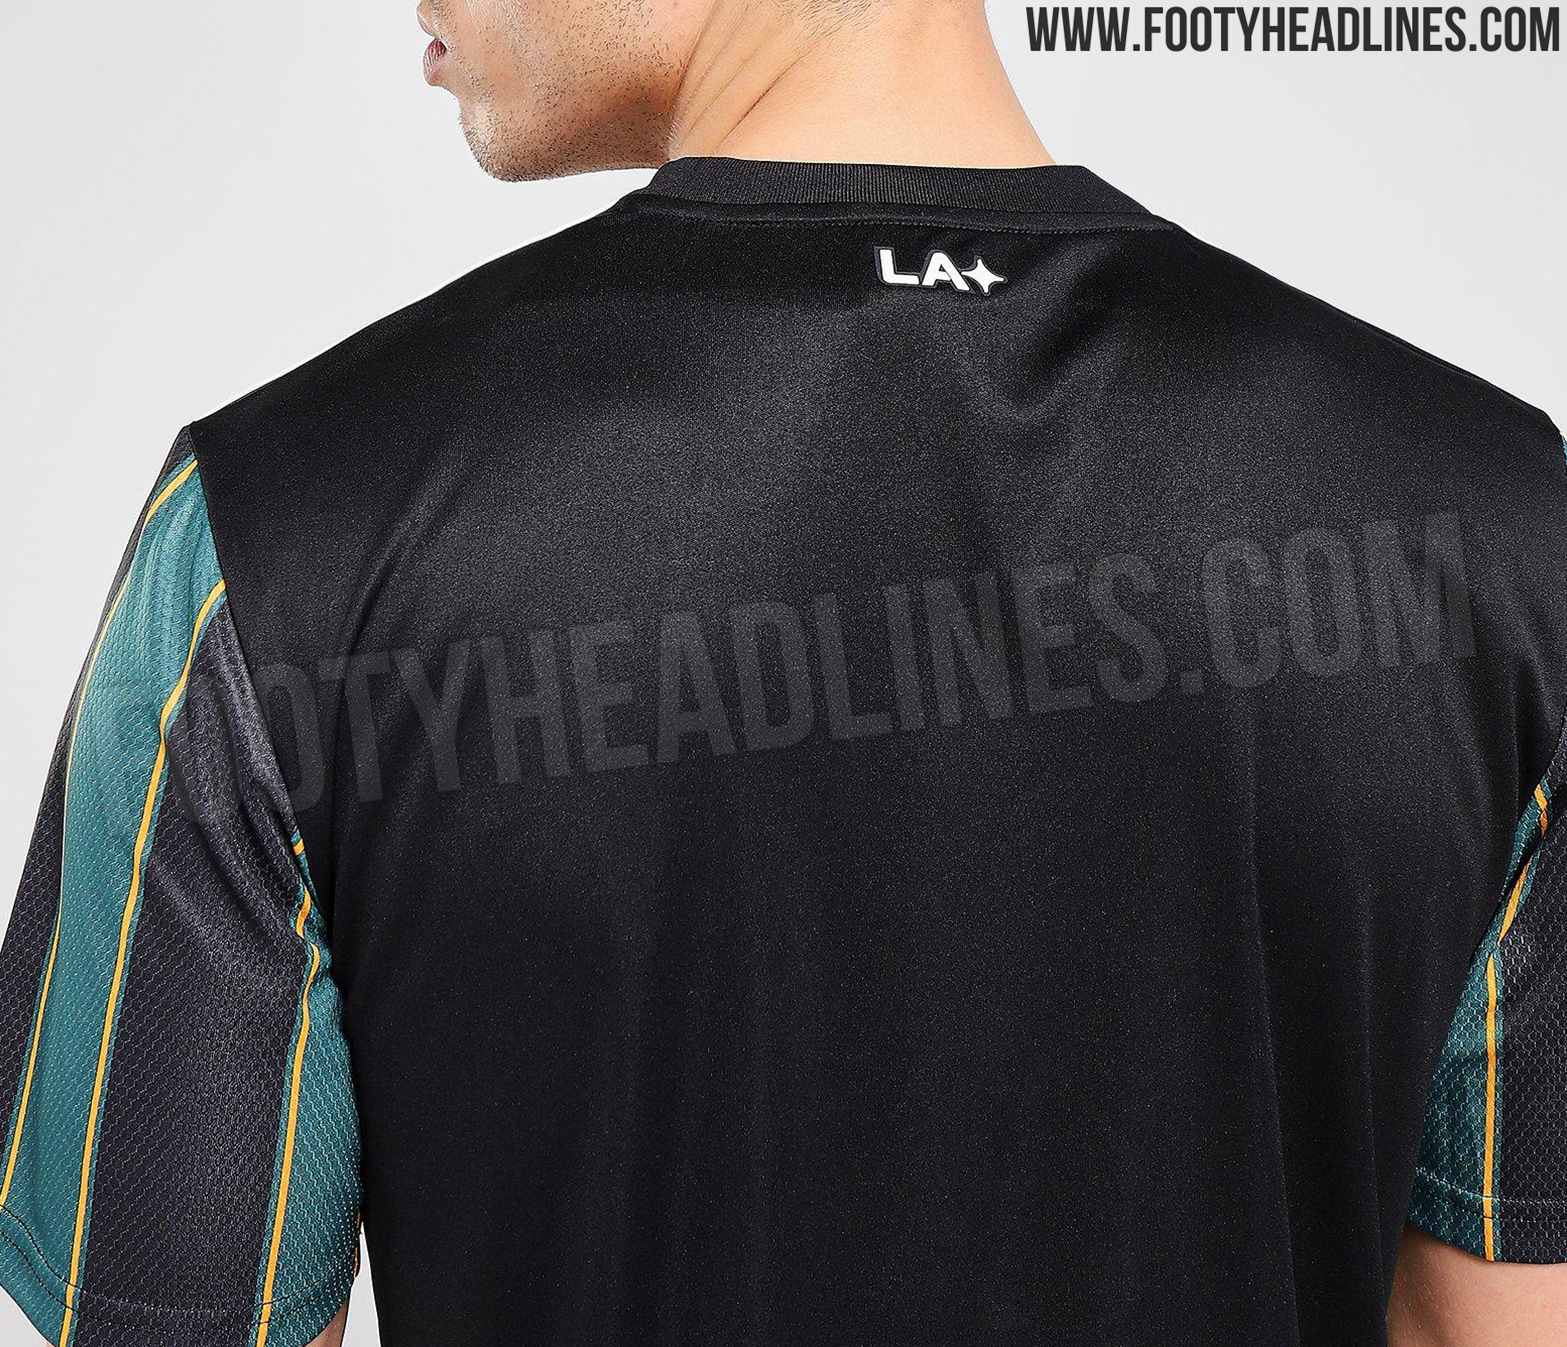 LA Galaxy 2021 Away Kit Released - Footy Headlines